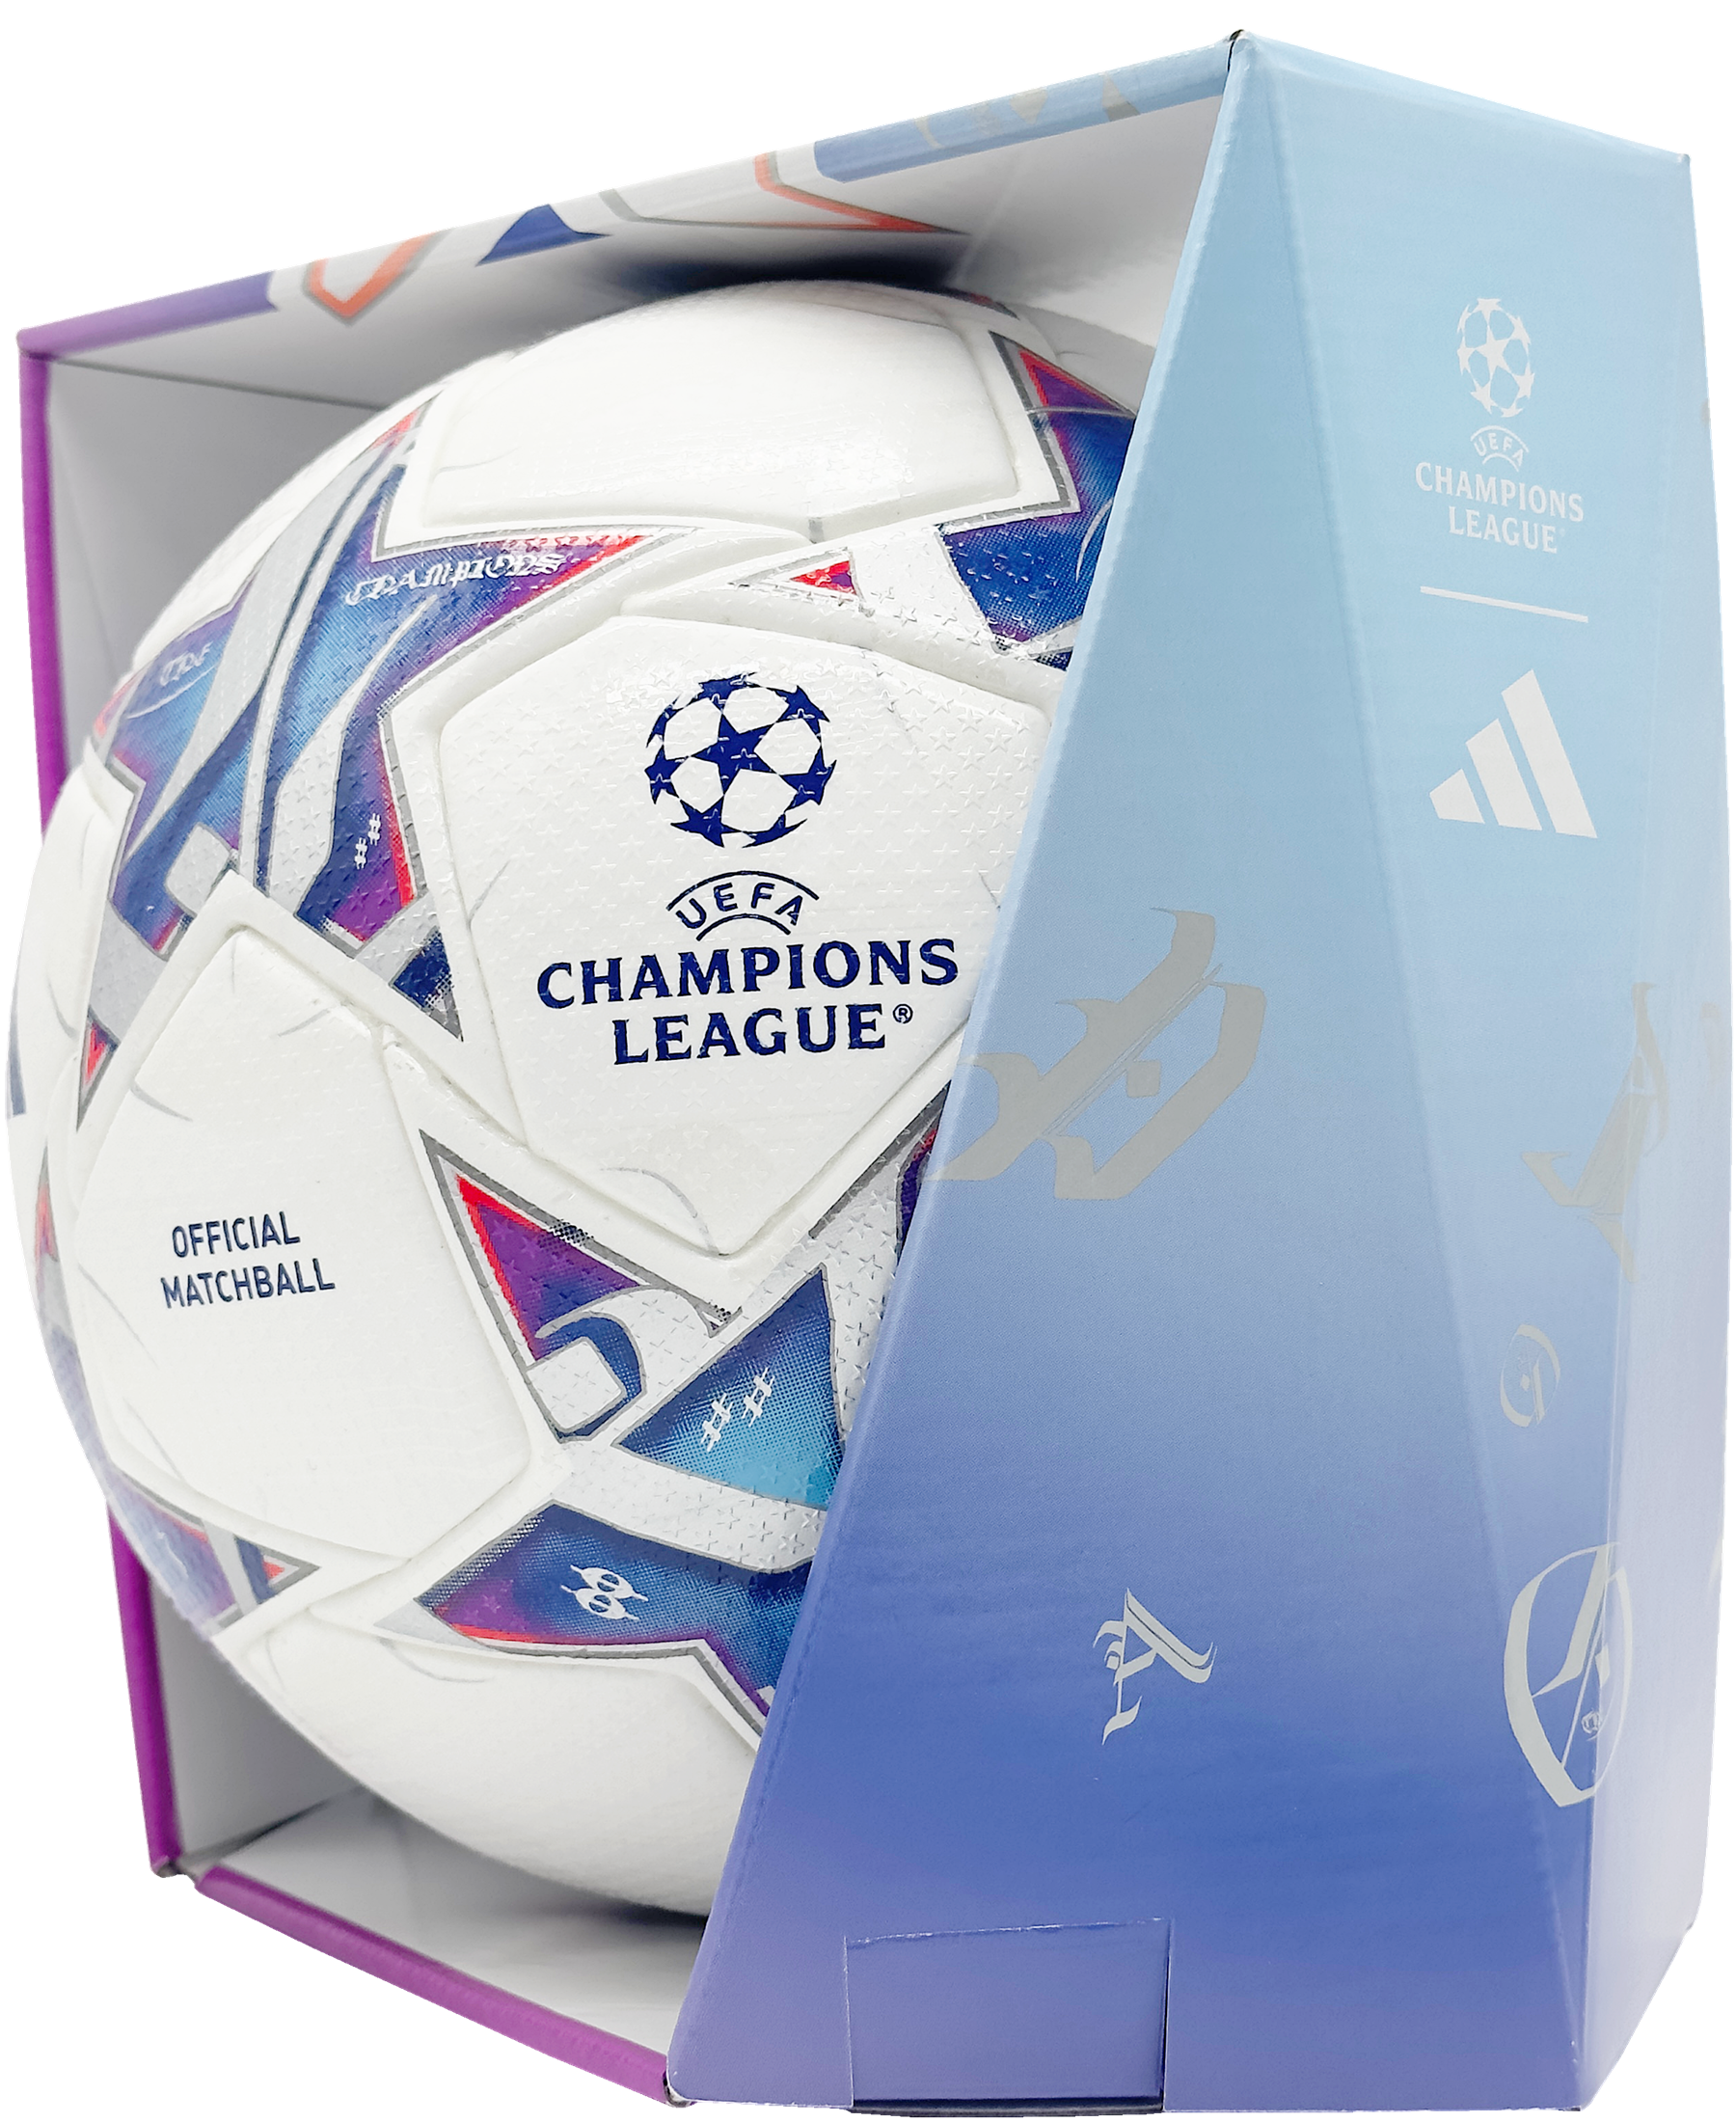 Der Adidas Official Match Ball UEFA Champions League Pro 2023/2024 (IA0953) ist der ultimative Spielball für die Champions League Saison. Entwickelt für Präzision, Kontrolle und Haltbarkeit bietet er ein herausragendes Spielerlebnis. Sein markantes Design mit offiziellem Logo macht ihn zur idealen Wahl für Profi- und Amateurfußballer. Holen Sie sich den offiziellen Spielball der UEFA Champions League jetzt bei SHOP4TEAMSPORT und erleben Sie Fußball auf höchstem Niveau.